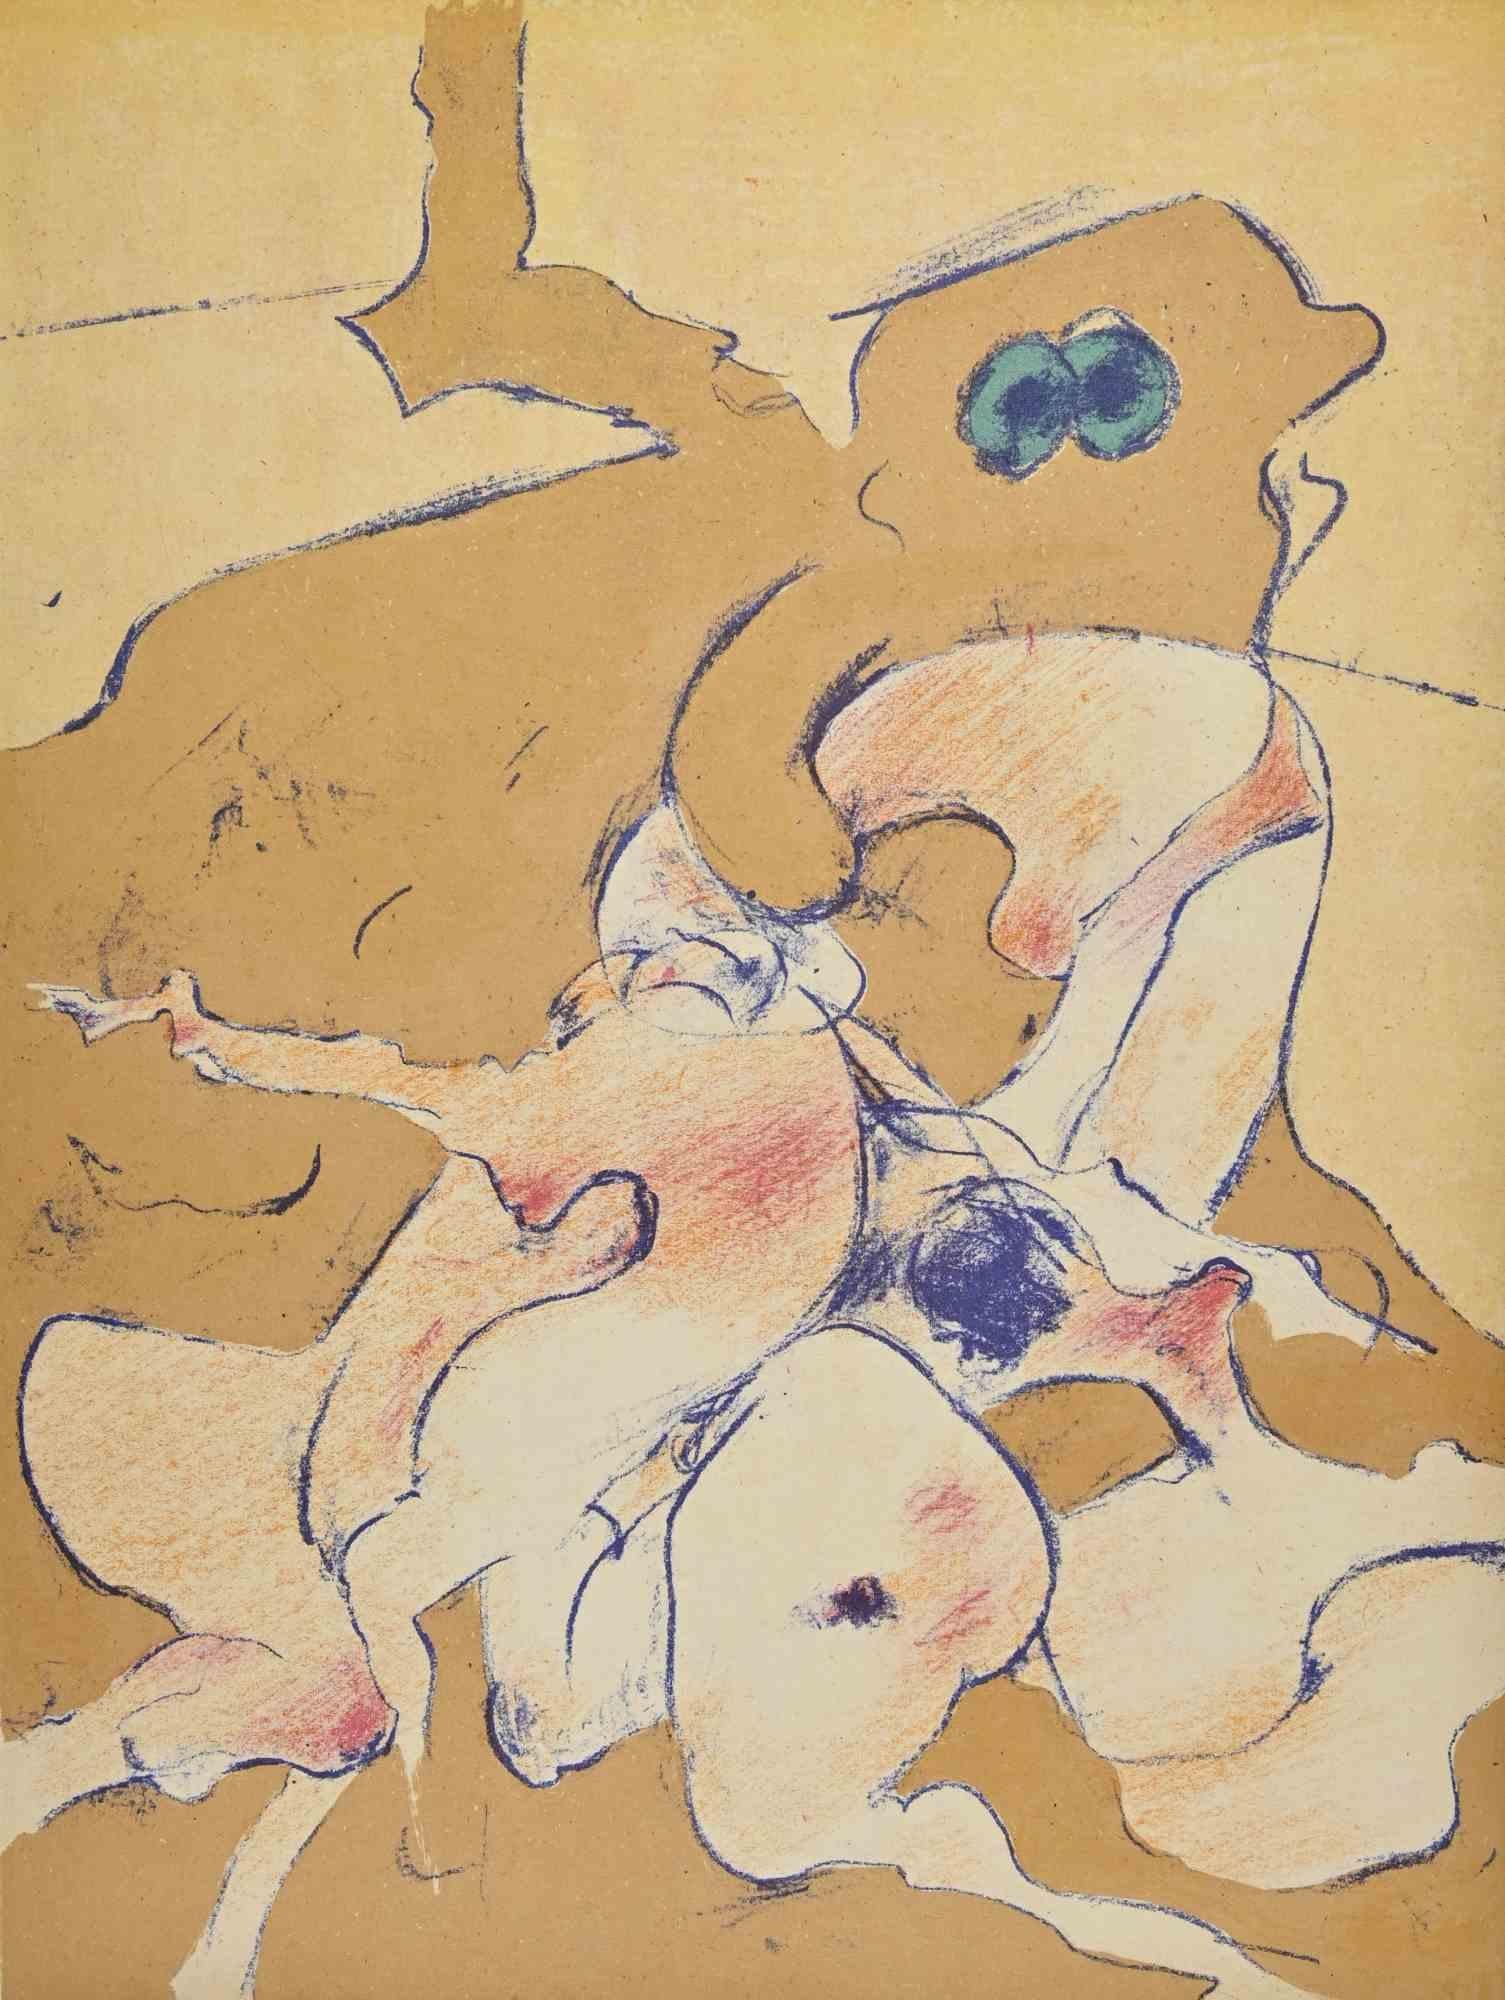 Untitled ist ein Kunstwerk von Dorothea Tanning aus dem Jahr 1974.

Kolorierte Lithographie.

Gute Bedingungen. Gedruckt im Atelier Pierre Chave in Vence, Frankreich.

Diese Lithographie wurde vom Künstler 1974 für die éditions XXe Siècle - Le